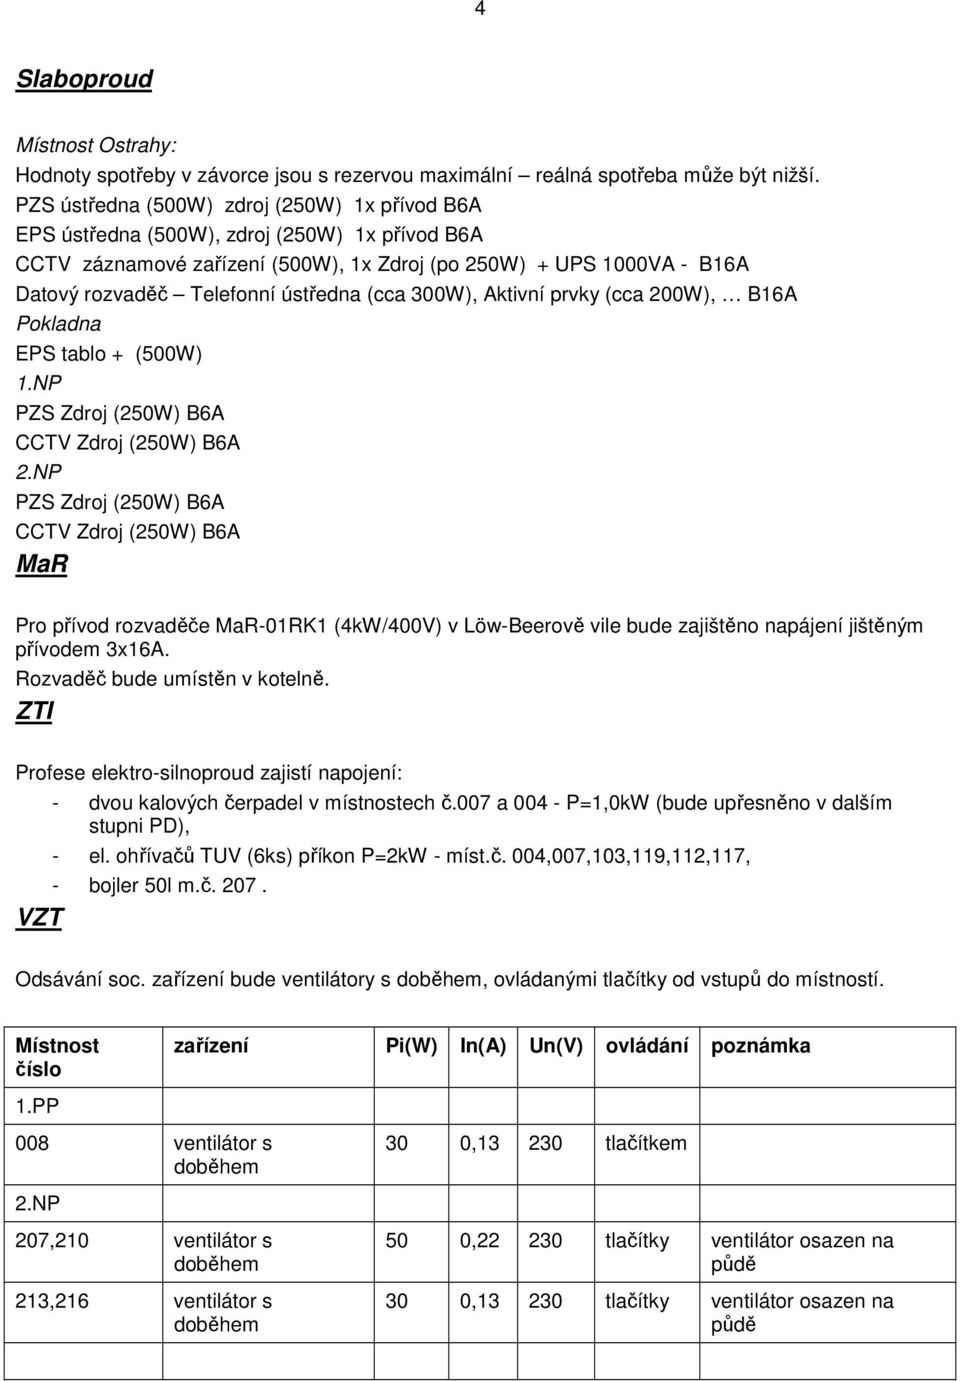 ústředna (cca 300W), Aktivní prvky (cca 200W), B16A Pokladna EPS tablo + (500W) 1.NP PZS Zdroj (250W) B6A CCTV Zdroj (250W) B6A 2.